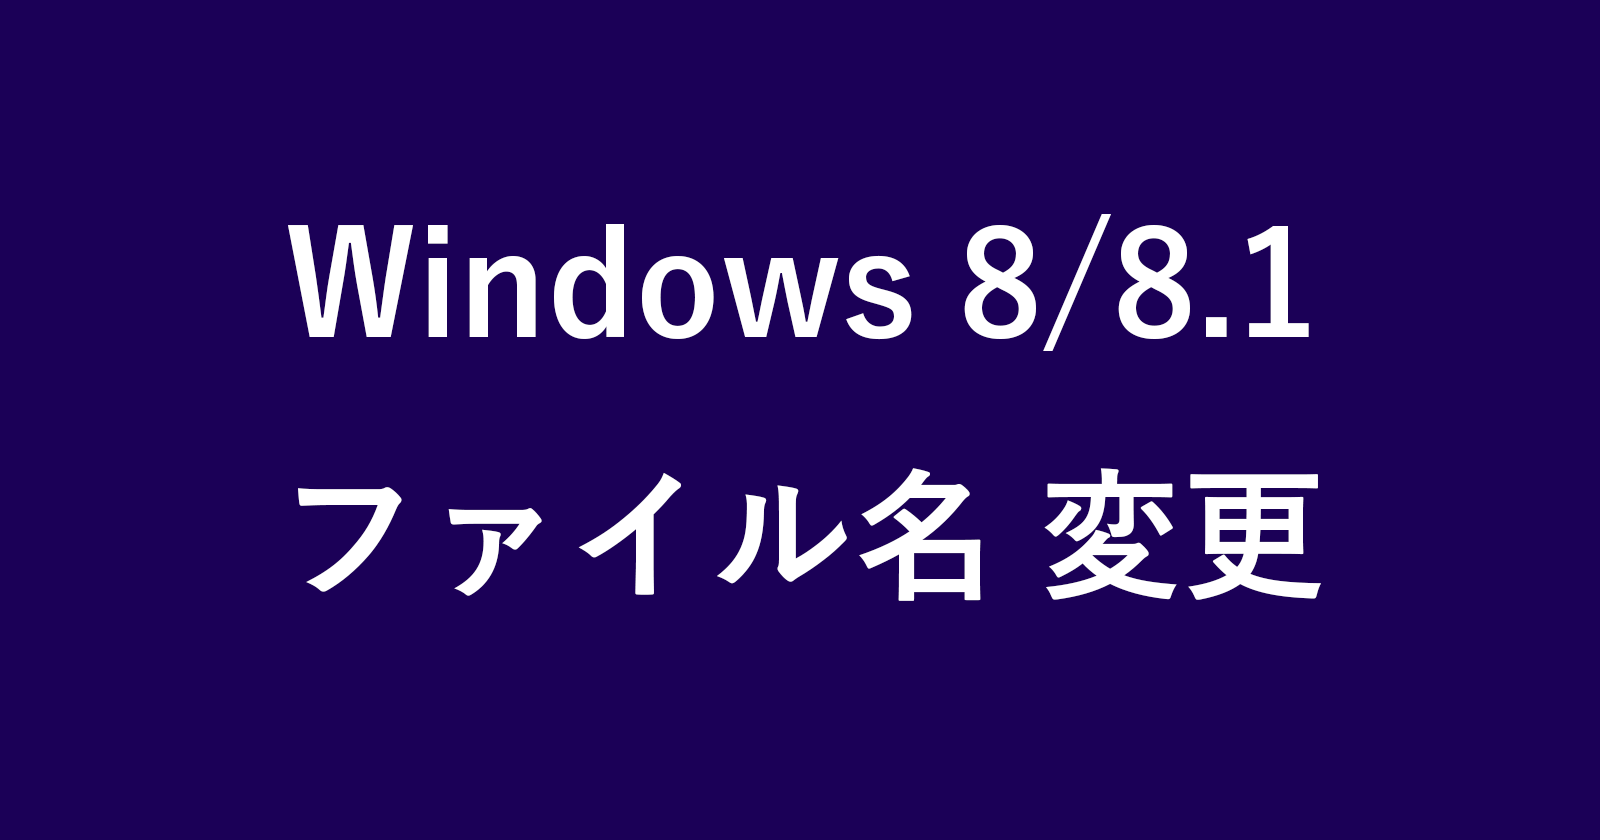 windows8 filename